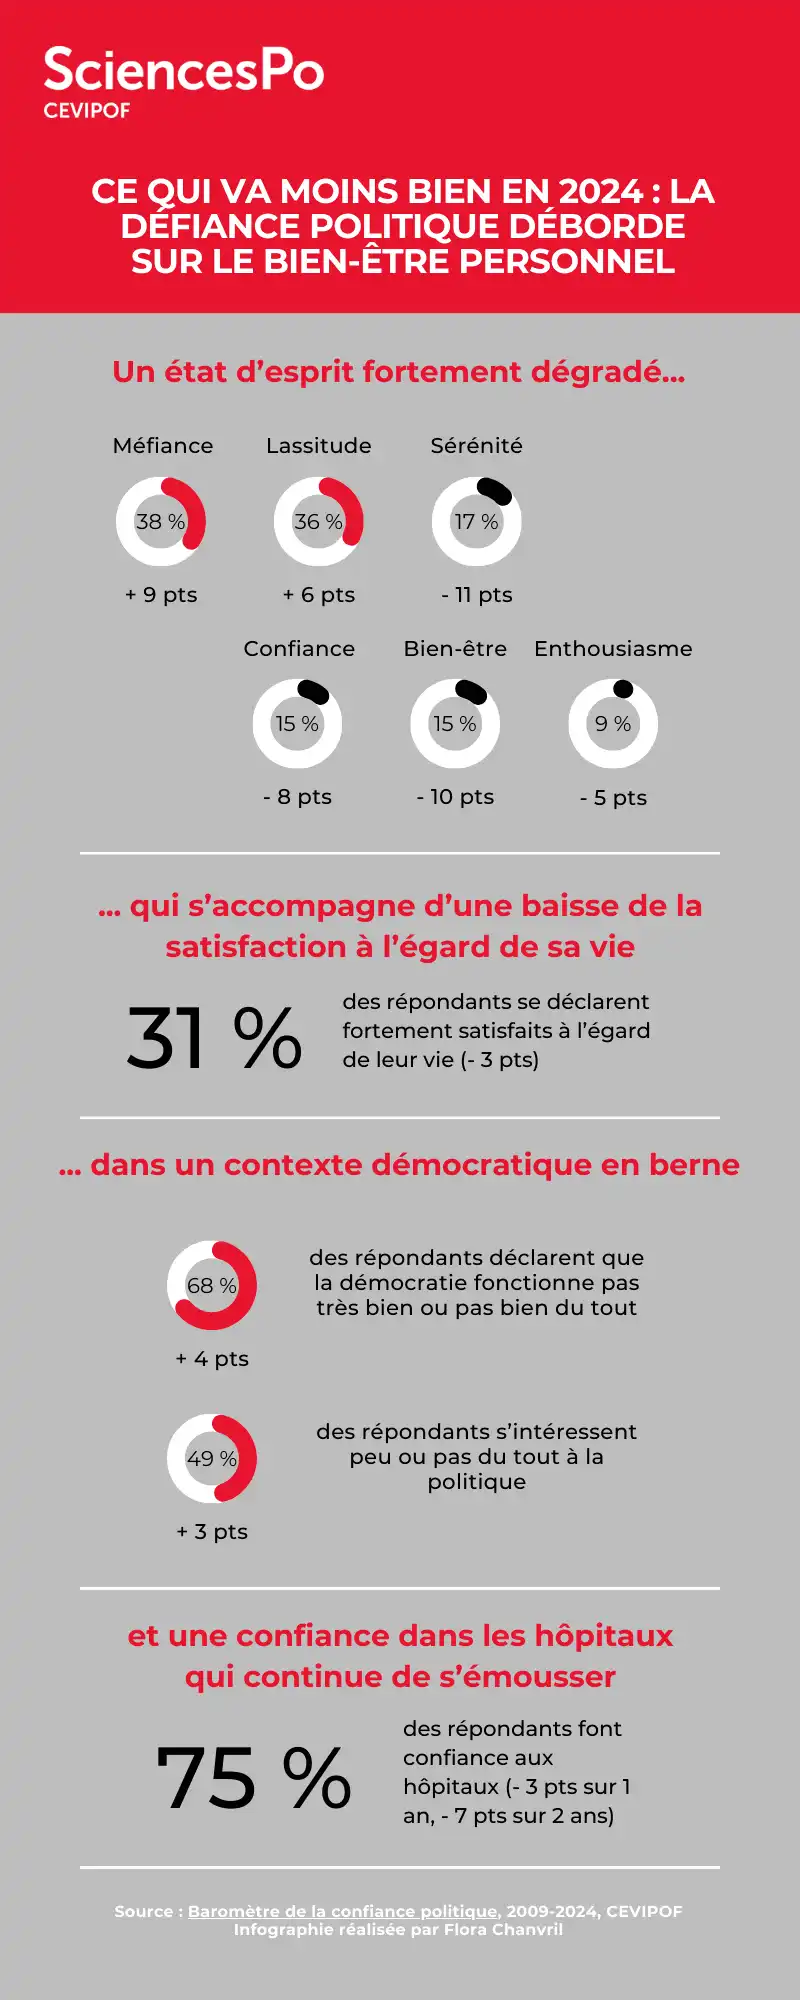 Une infographie sur les résultats du Baromètre concernant la défiance politique, qui déborde sur le bien-être personnel.